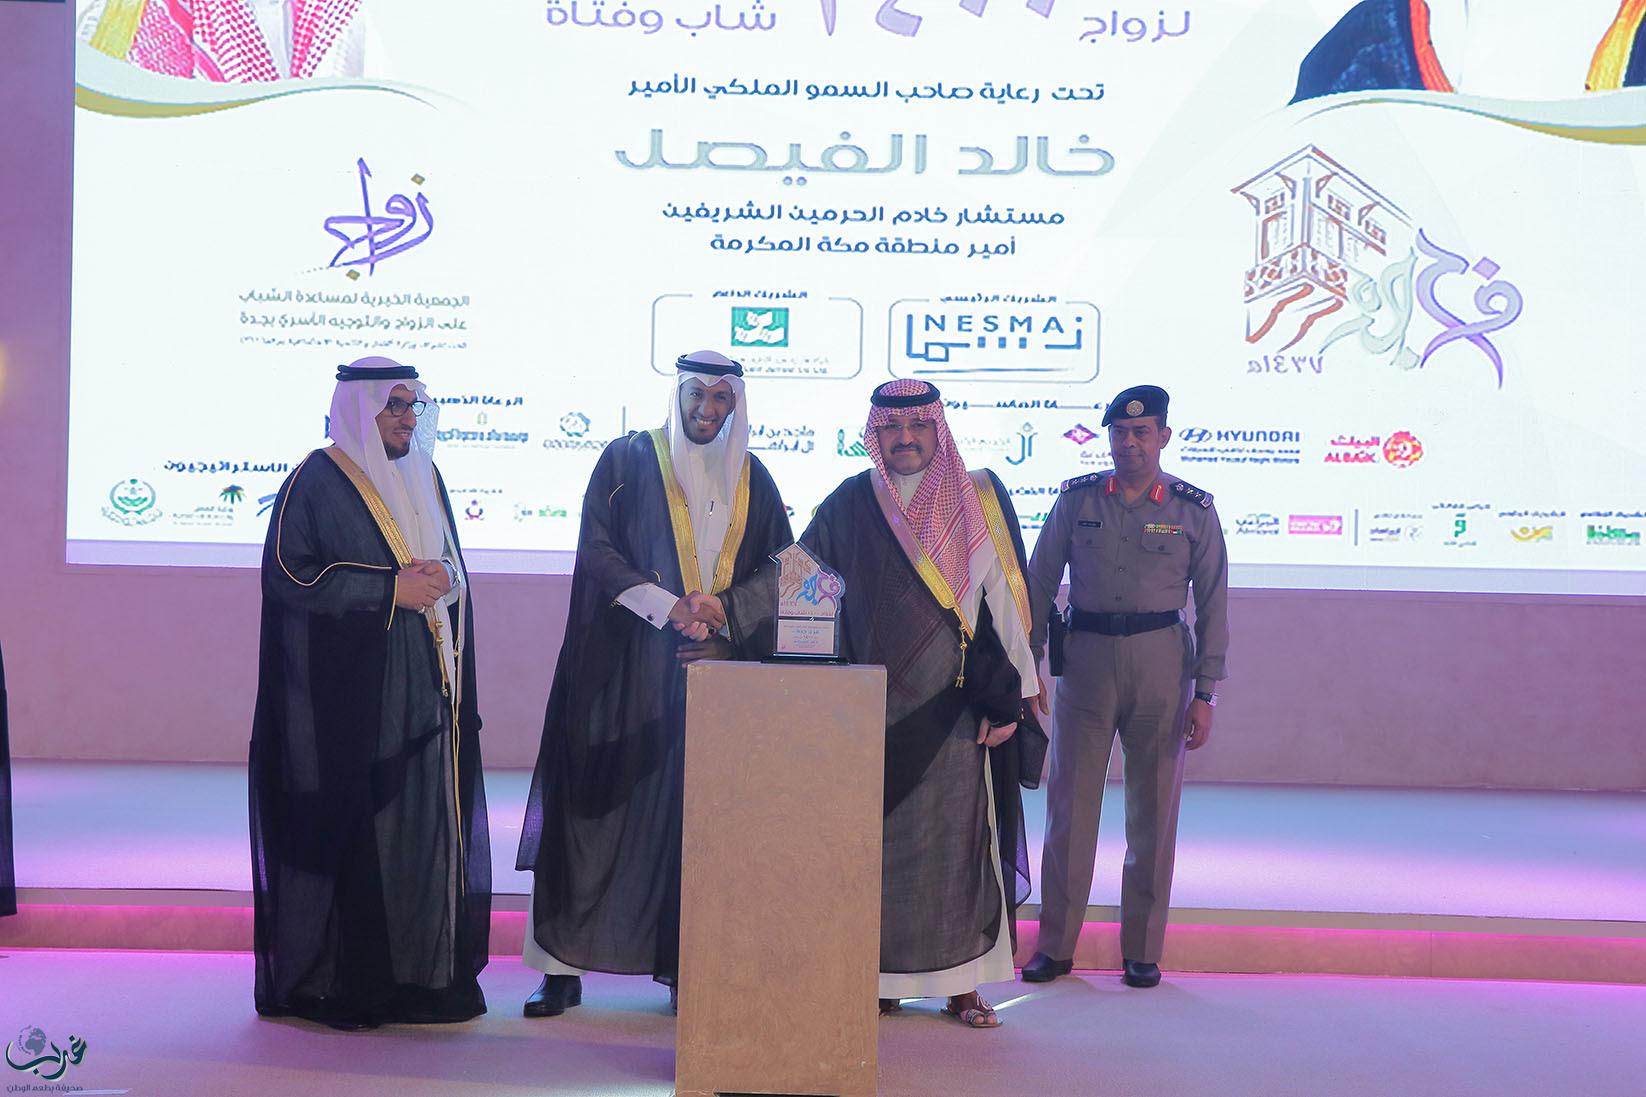 الأمير مشعل بن ماجد يكرم مؤسسة سالم بن محفوظ الخيرية لدعمها زفاف 1400 شاباً وفتاة